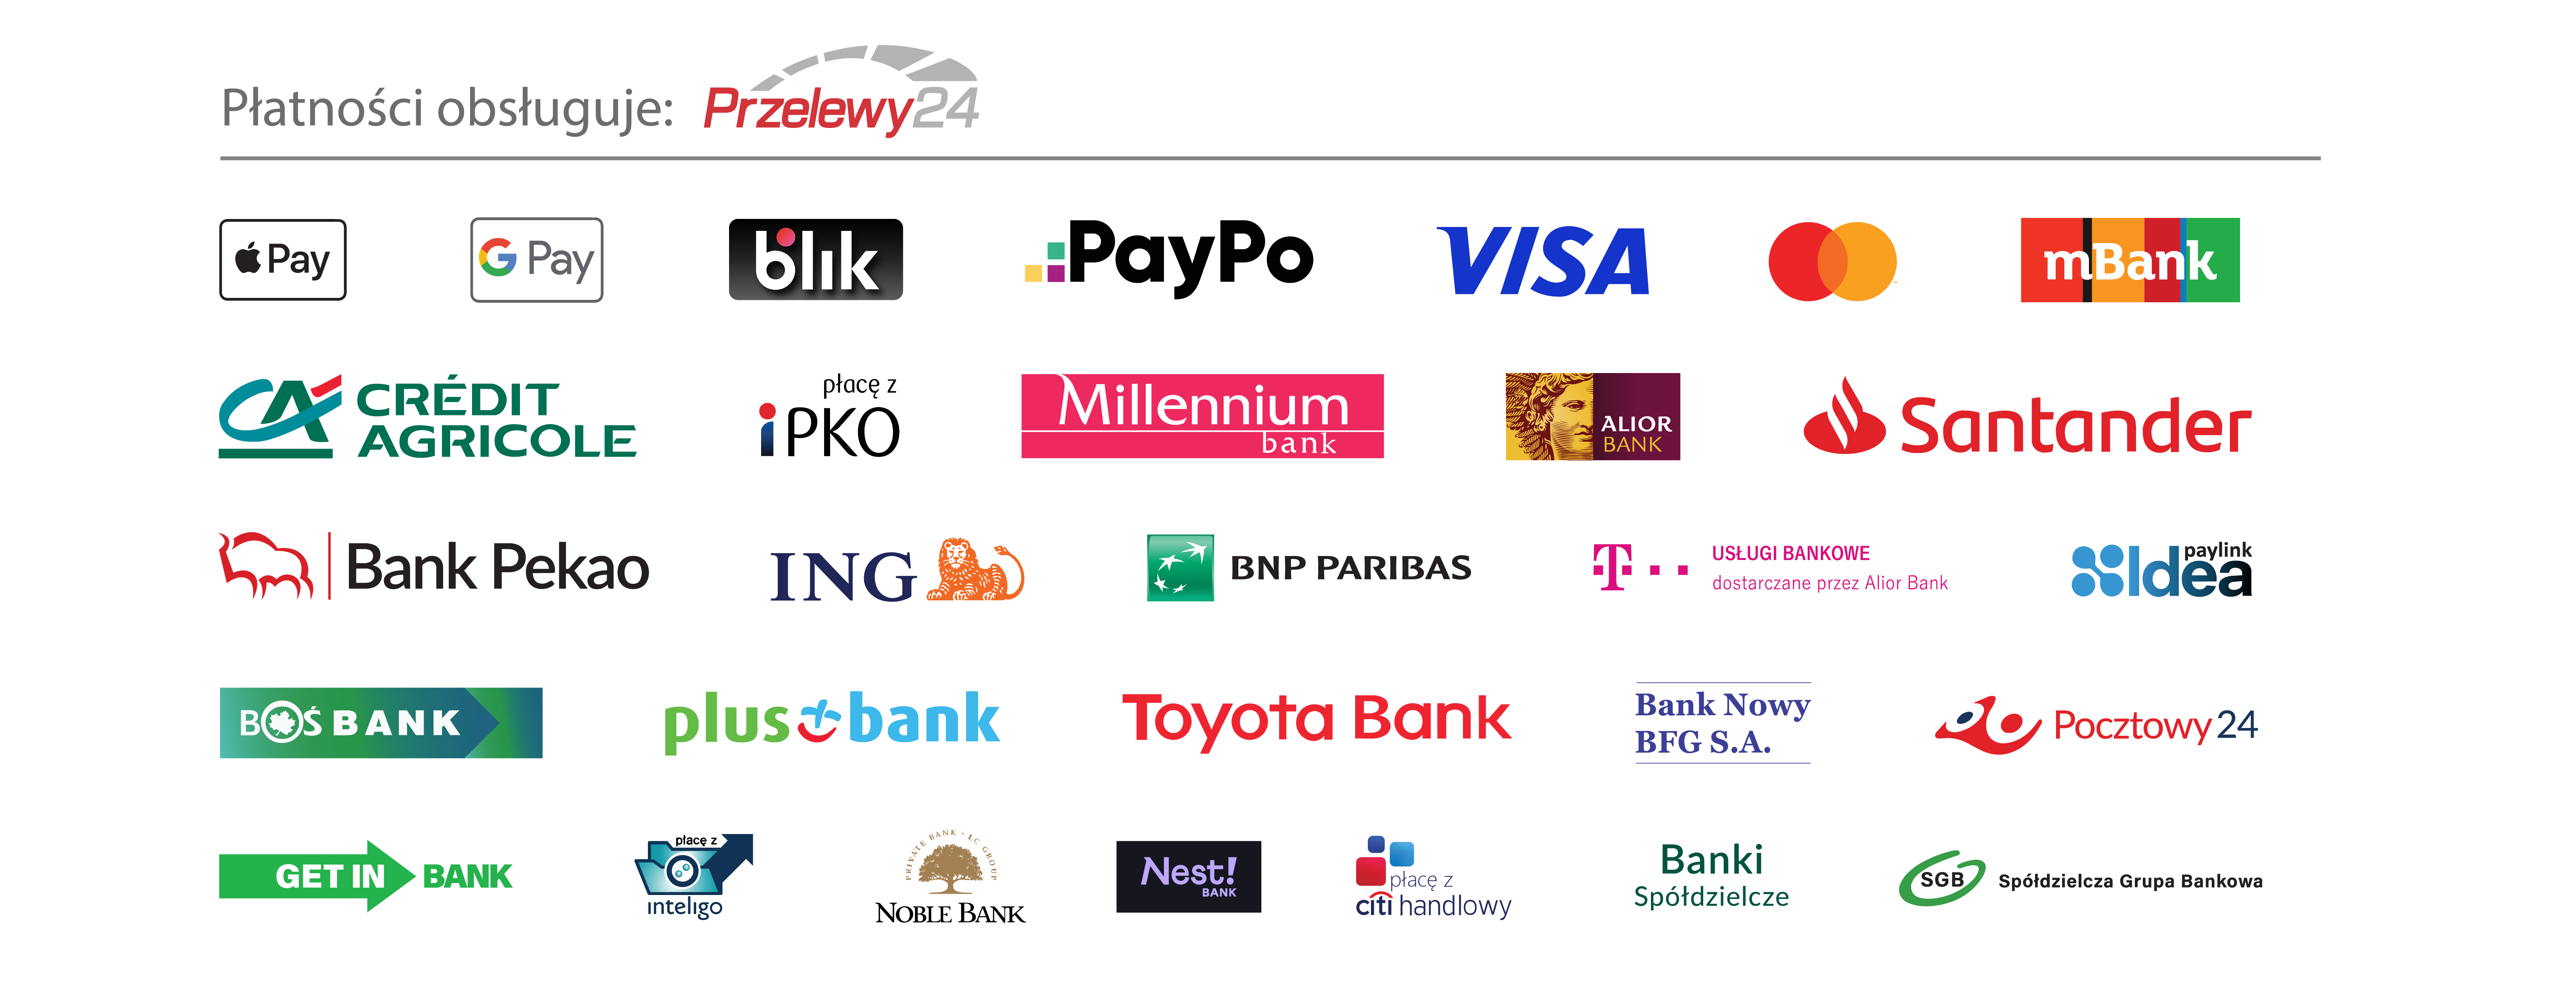 Dostępne metody płatności: Apple Pay, Google Pay, BLIK, PayPo, VISA, Mastercard, mBank, Crédit Agricole, płacę z iPKO, Millenium bank, Alior Bank, Santander, Bank Pekao, ING, BNP Paribas, T-Mobile Usługi Bankowe, Idea, BOŚ Bank, Plus Bank, Toyota Bank, Bank Nowy BFG S.A., Pocztowy24, GET IN BANK, Płacę z Inteligo, NOBLE BANK, Nest! Bank, płacę z Citi Handlowy, Banki spółdzielcze, Spółdzielcza Grupa Bankowa. Płatności obsługiwane przez Przelewy24.